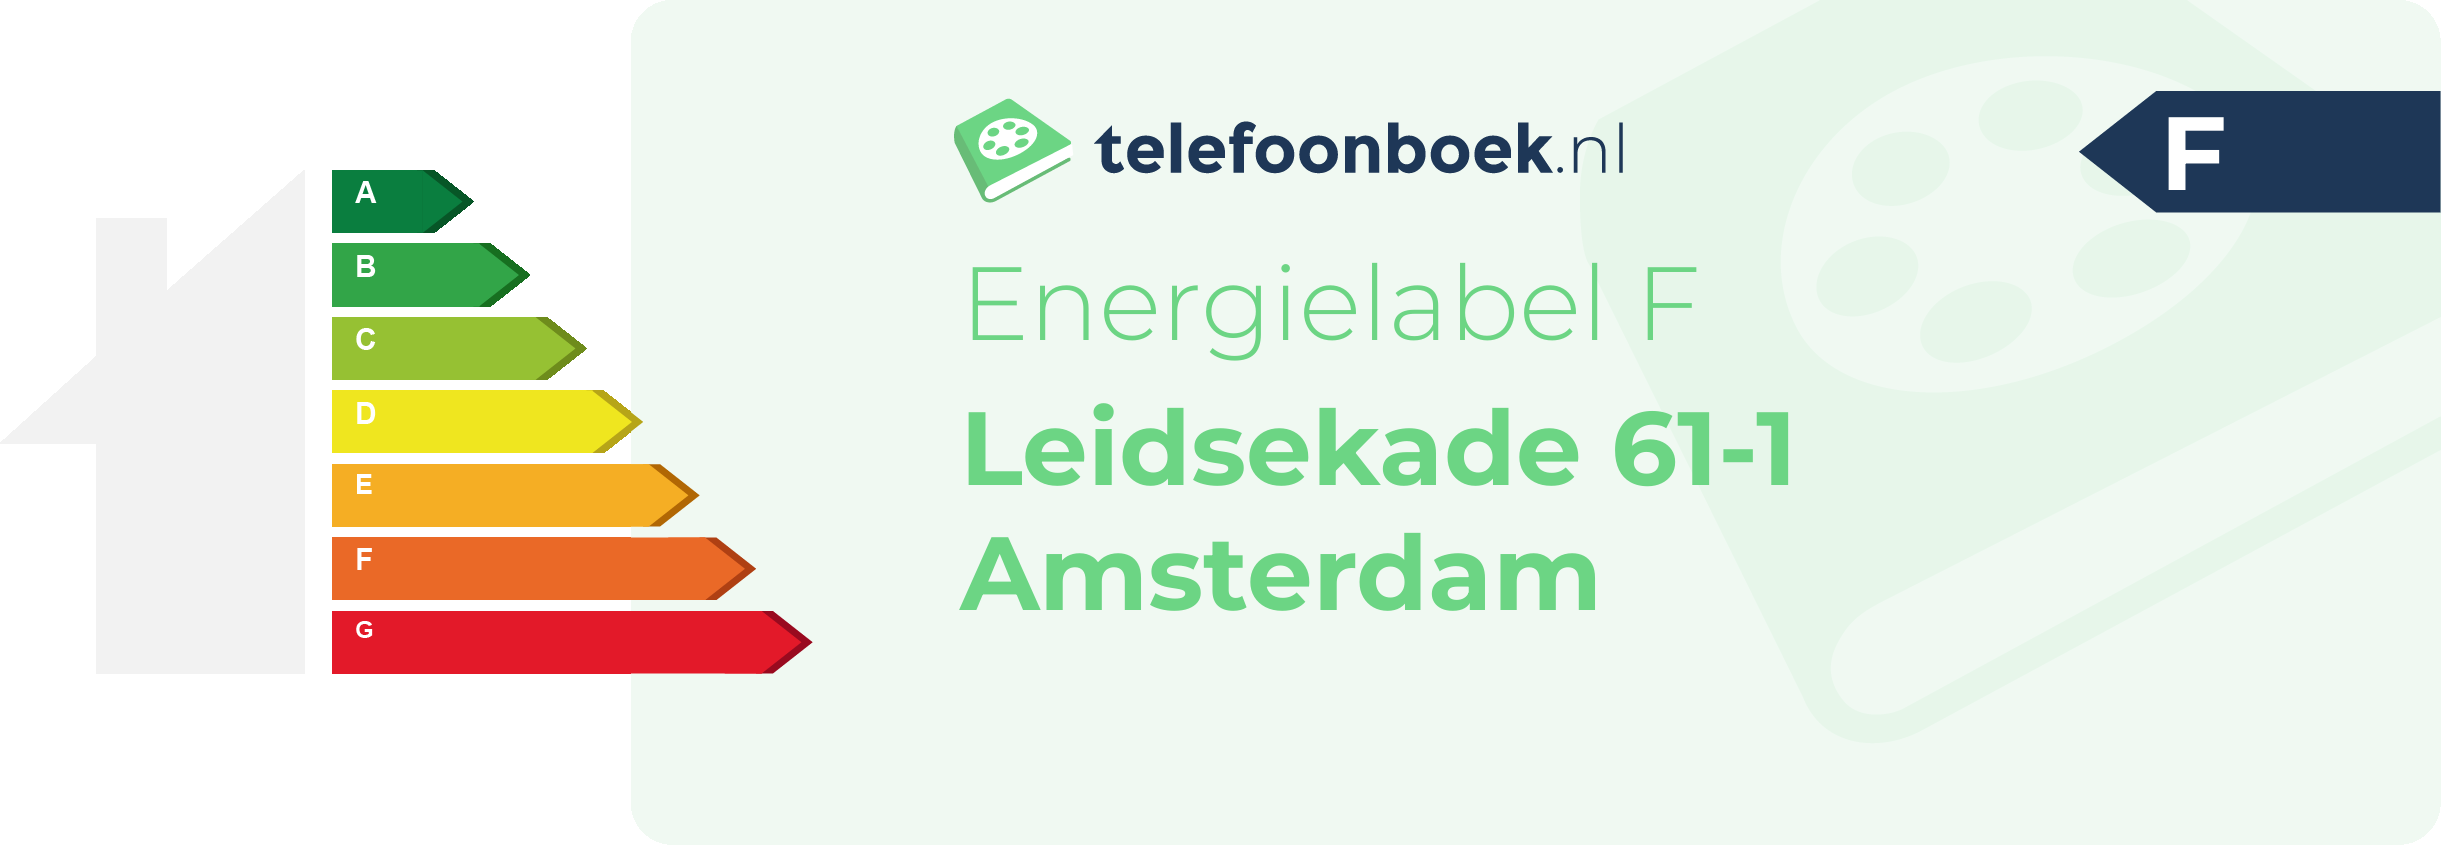 Energielabel Leidsekade 61-1 Amsterdam